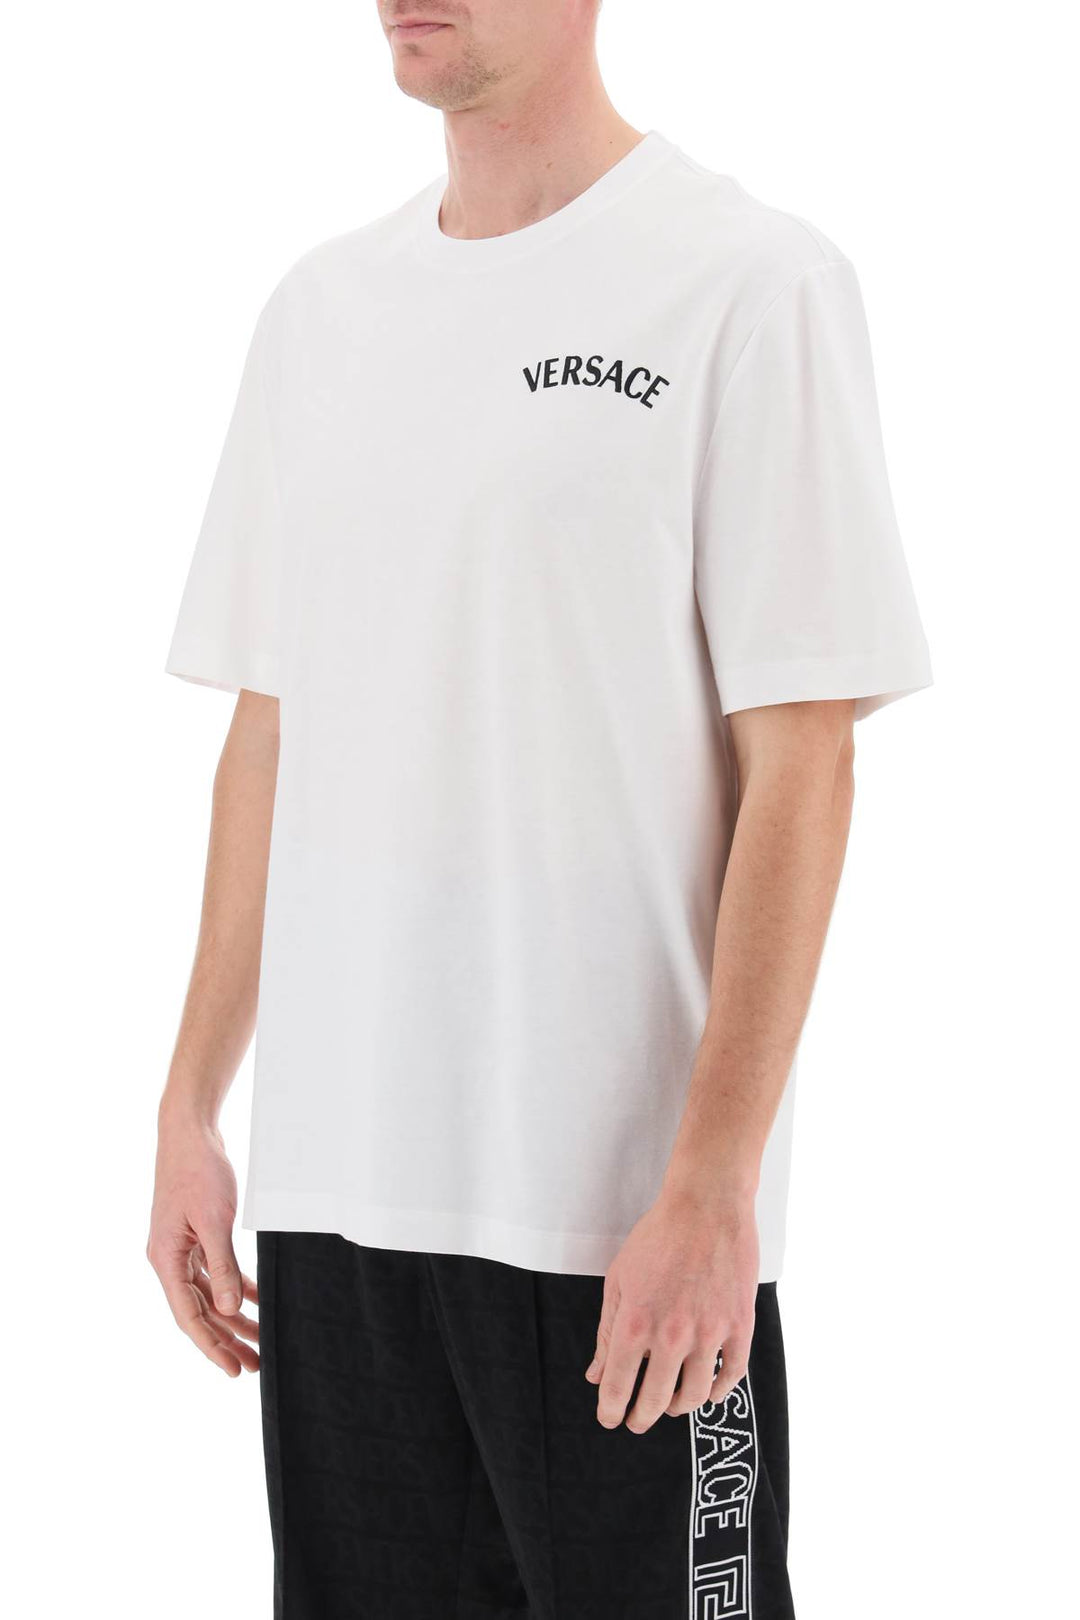 Versace Milano Stamp Crew Neck T Shirt   Bianco